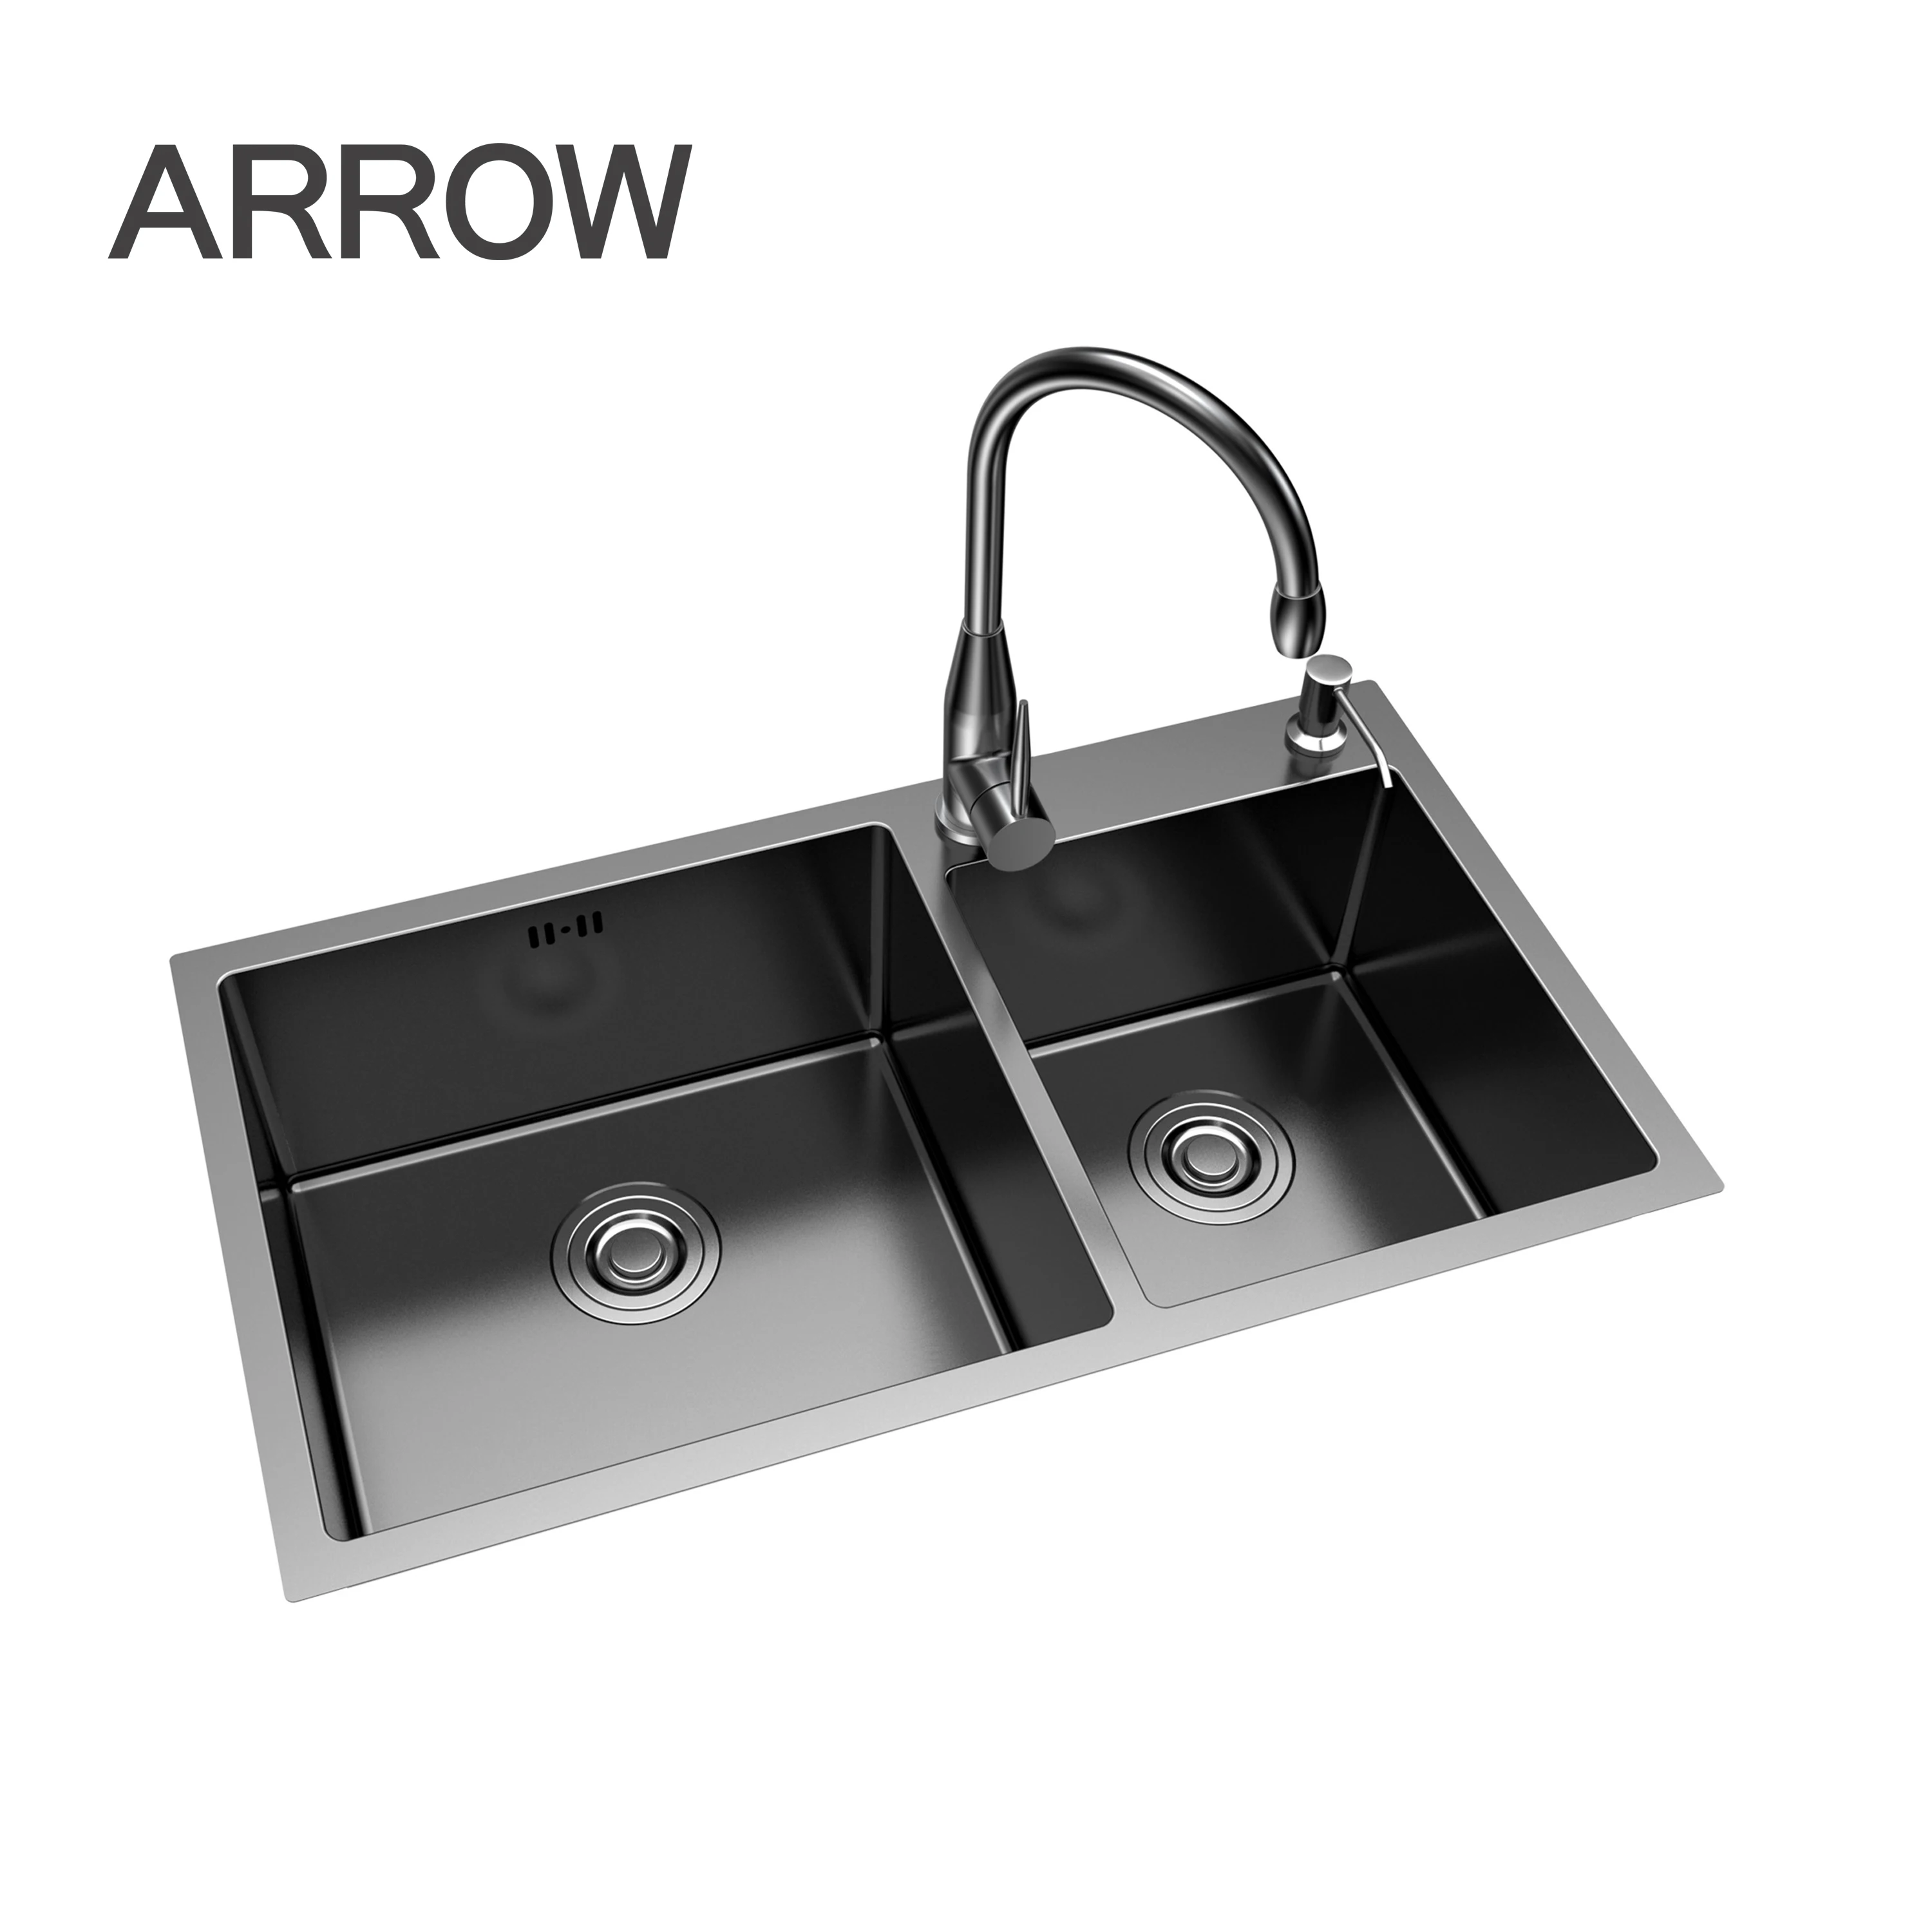 Arrow Hot Sale Sus304 Titanium Black Stainless Steel Sink Buy